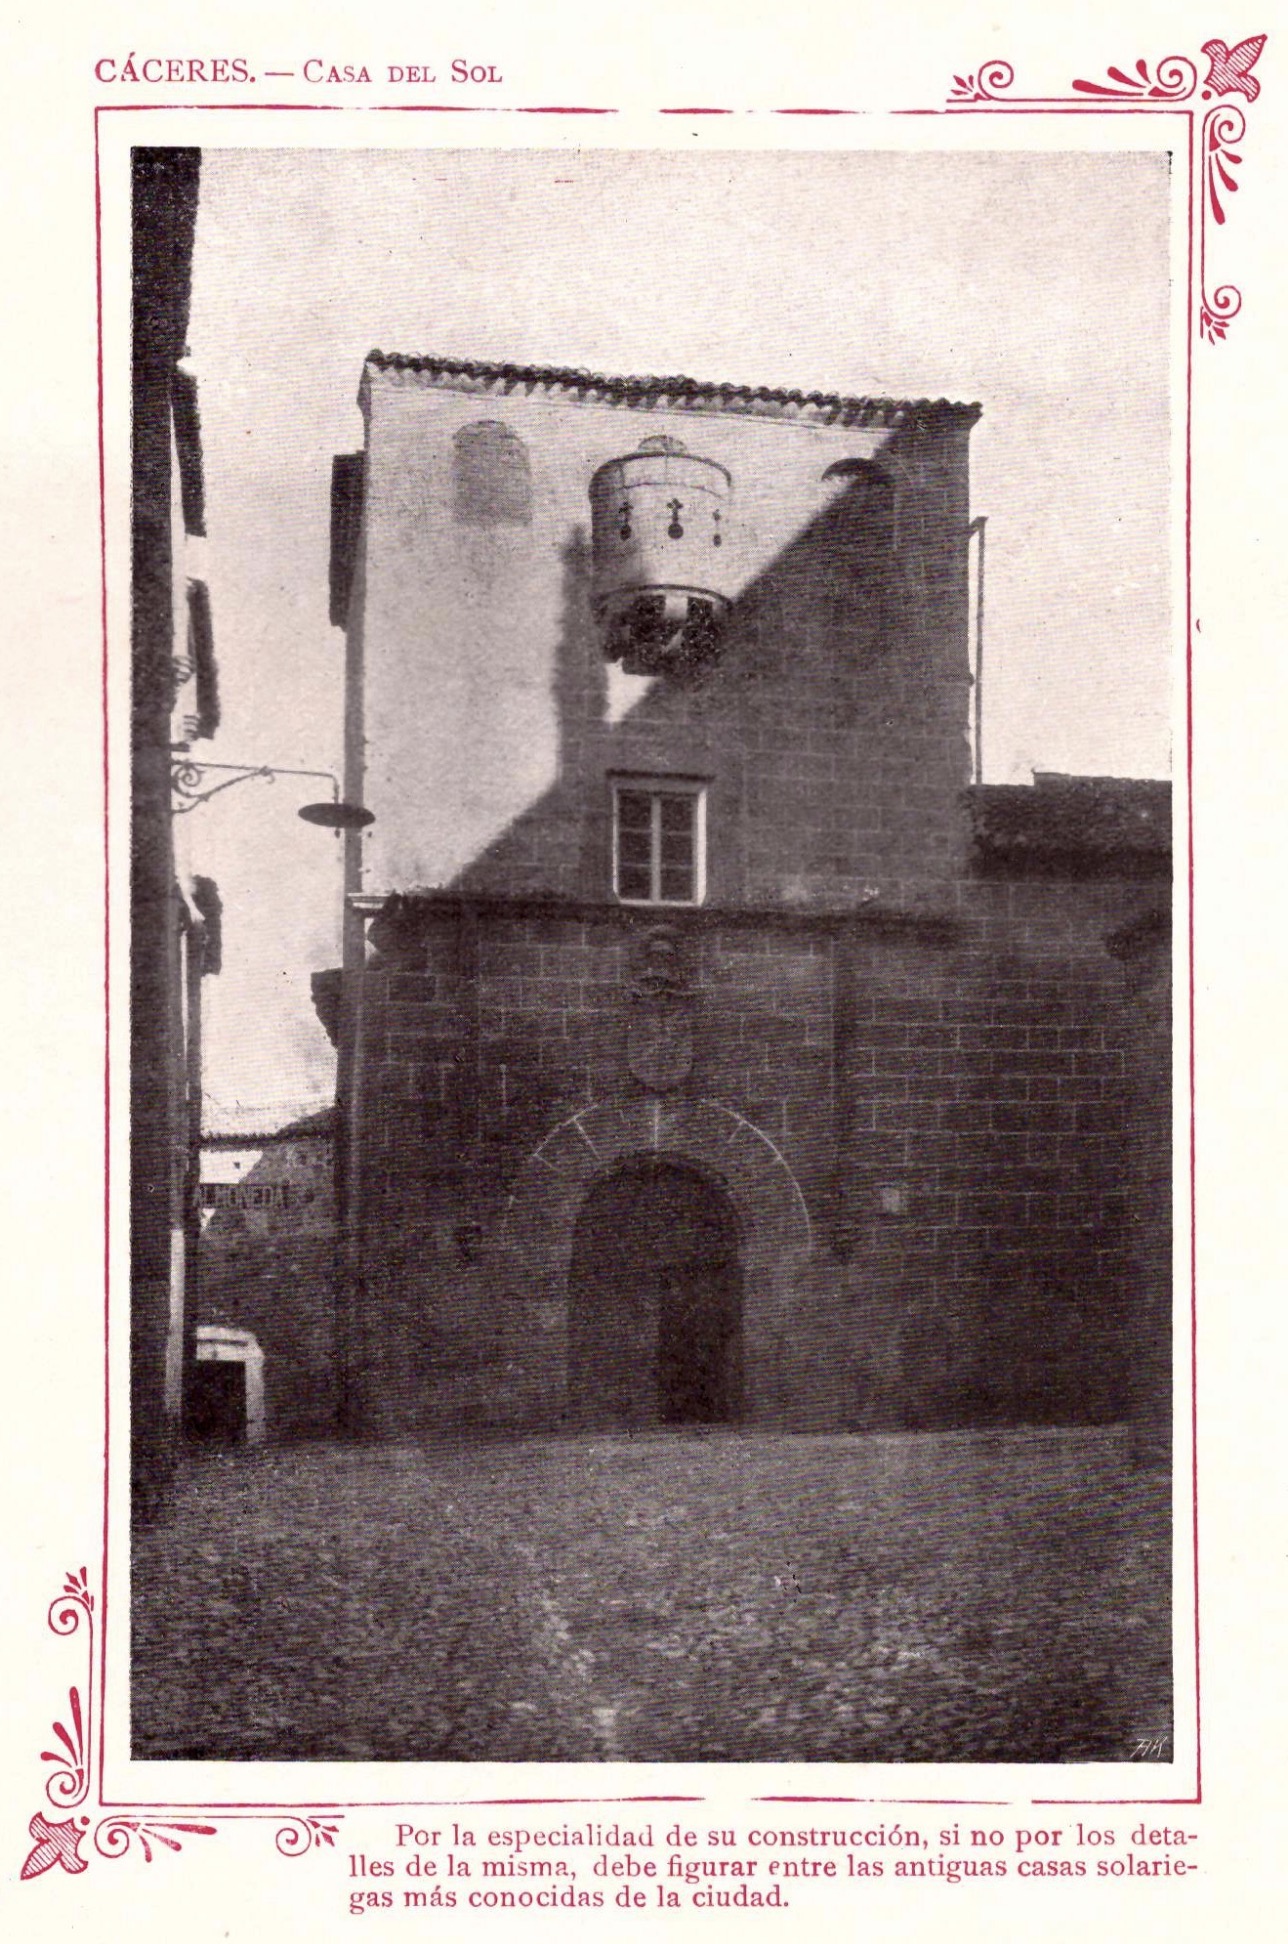 1910 - Cáceres portfolio